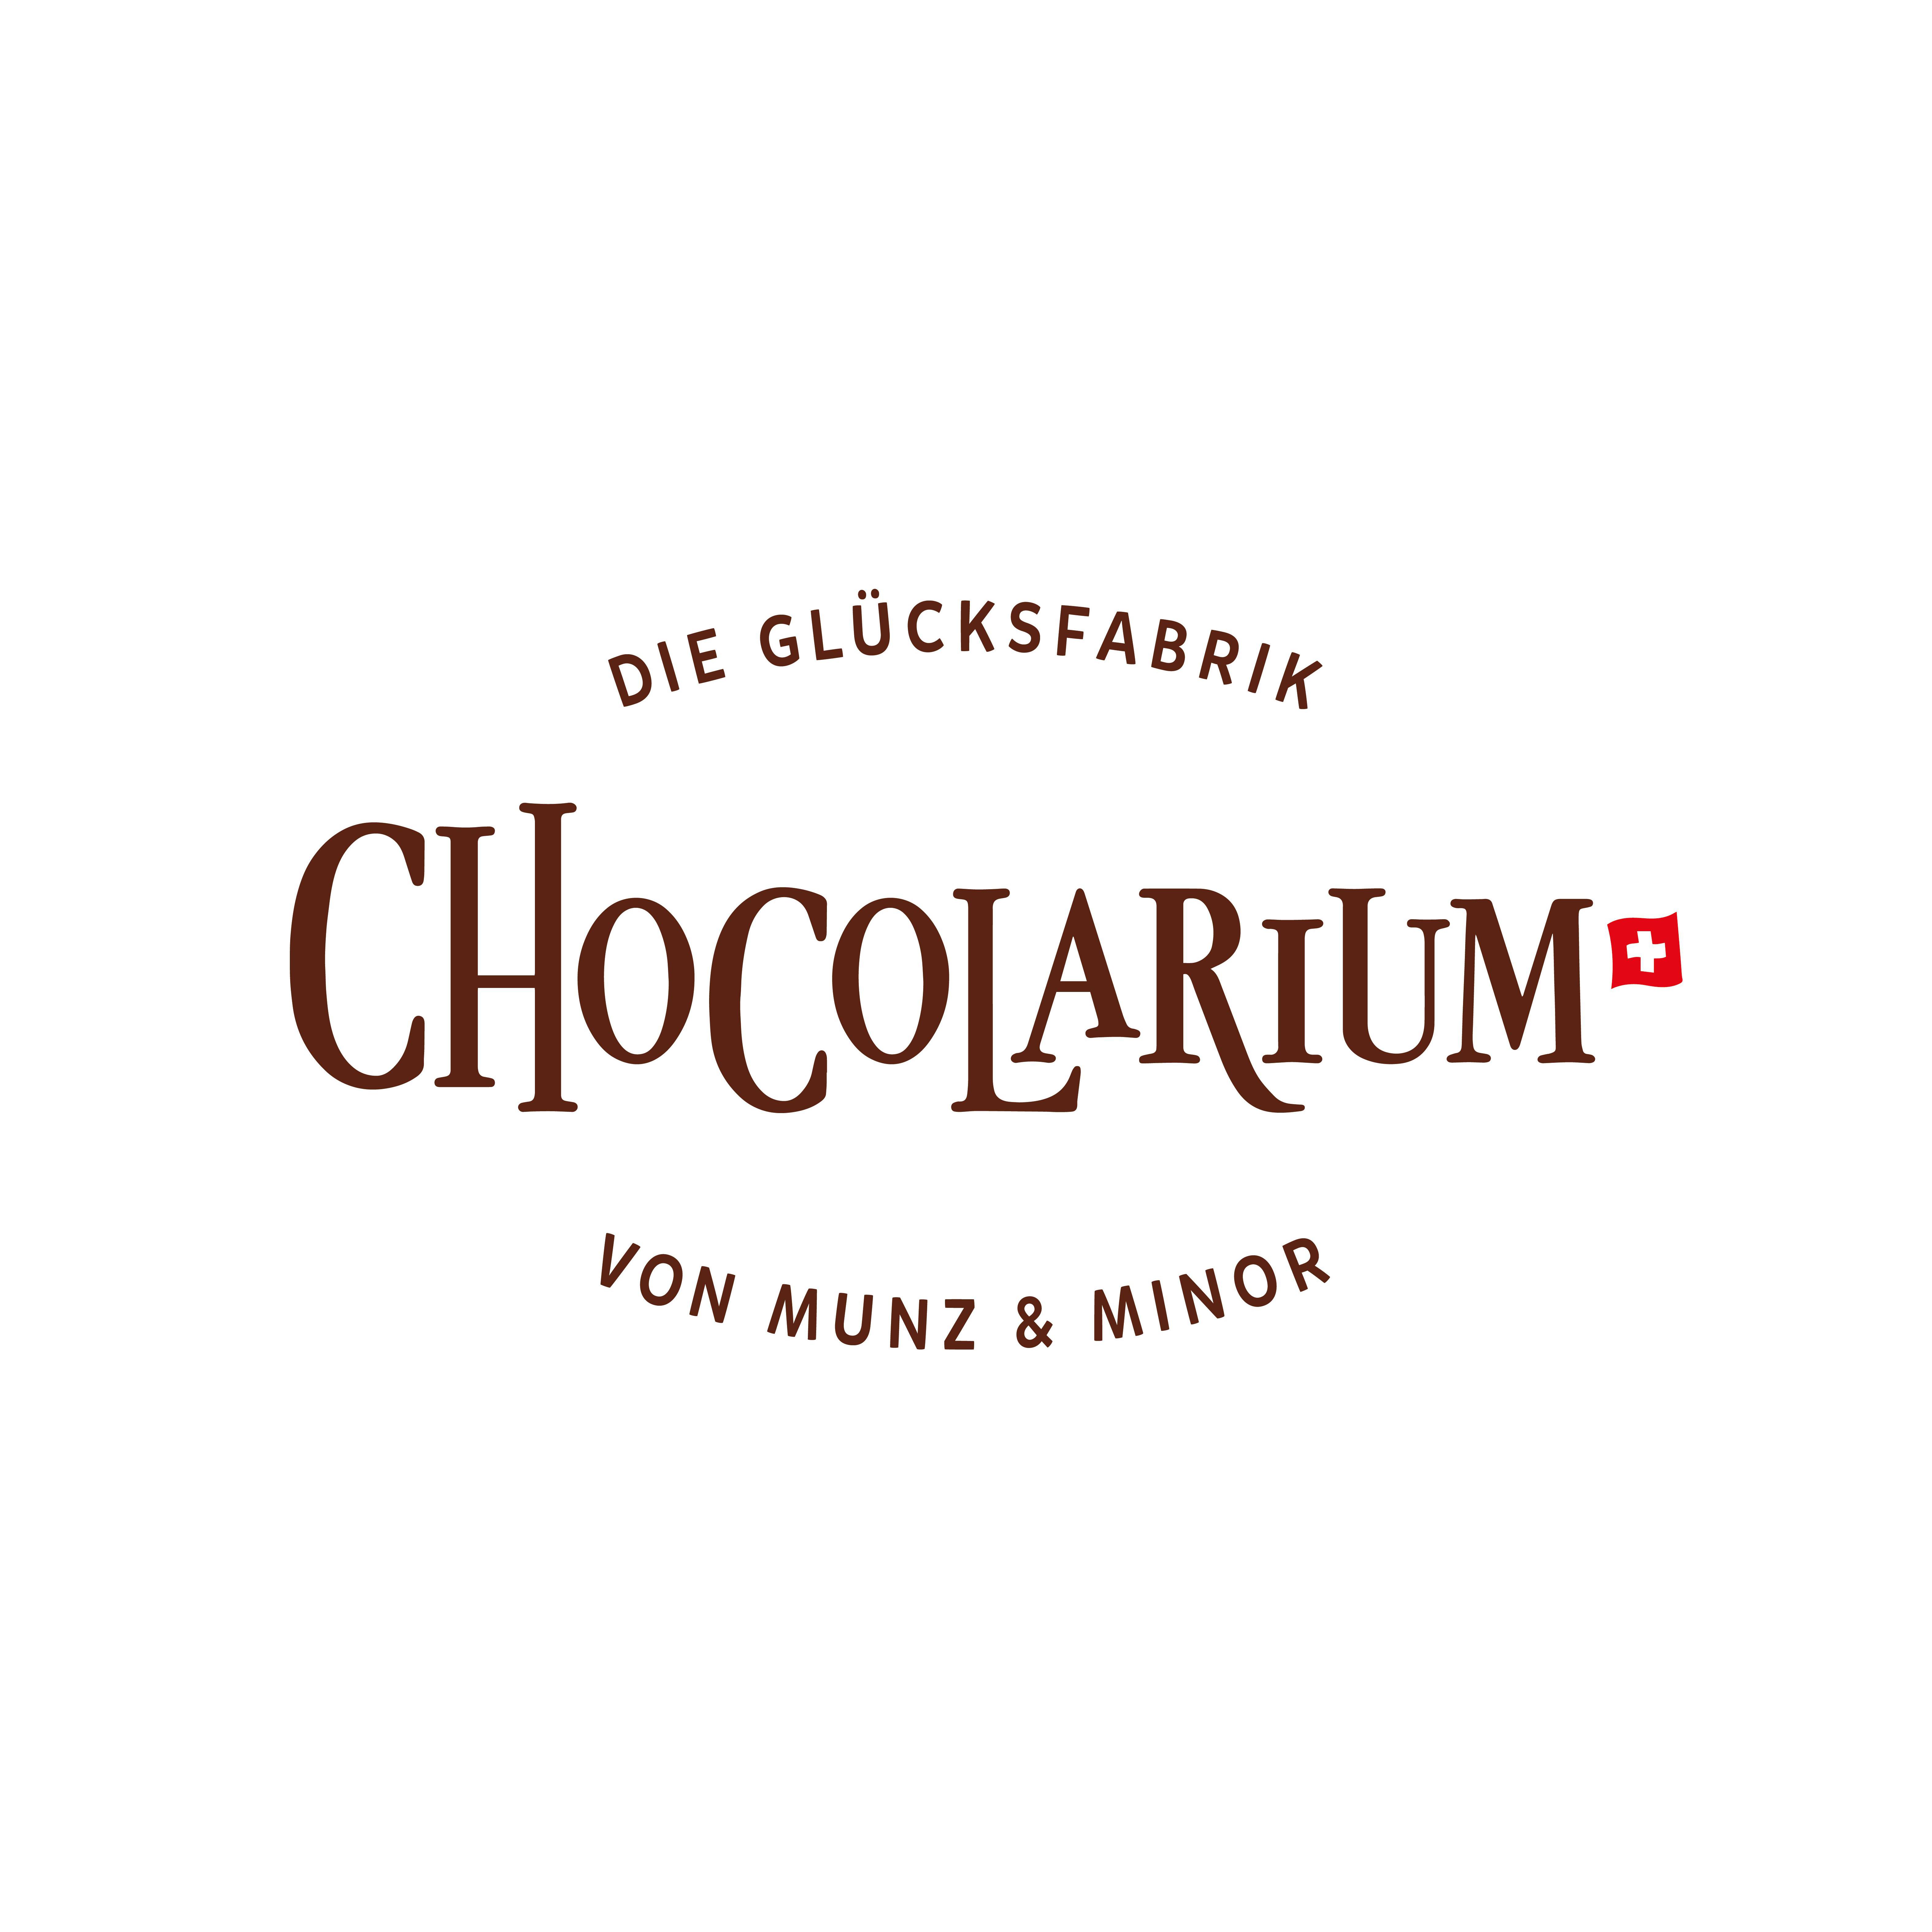 Chocolarium - die Glücksfabrik von Munz und Minor Logo